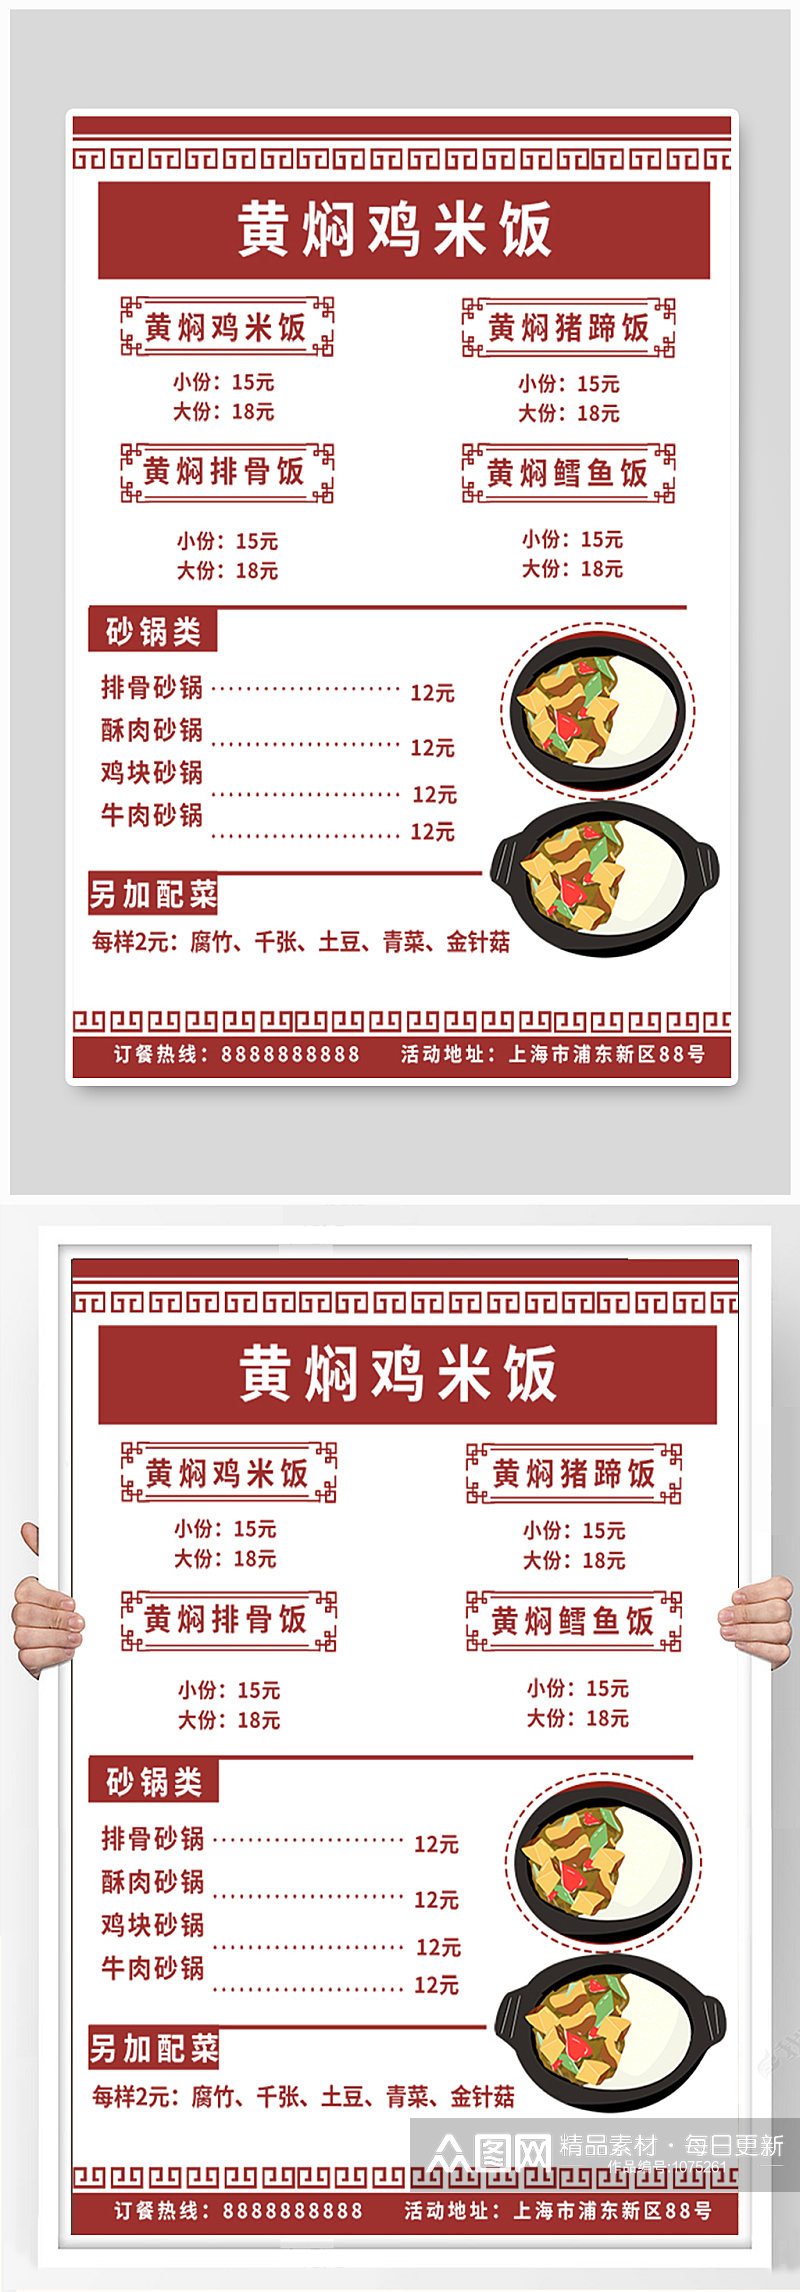 黄焖鸡米饭中国风菜单砂锅价目表素材